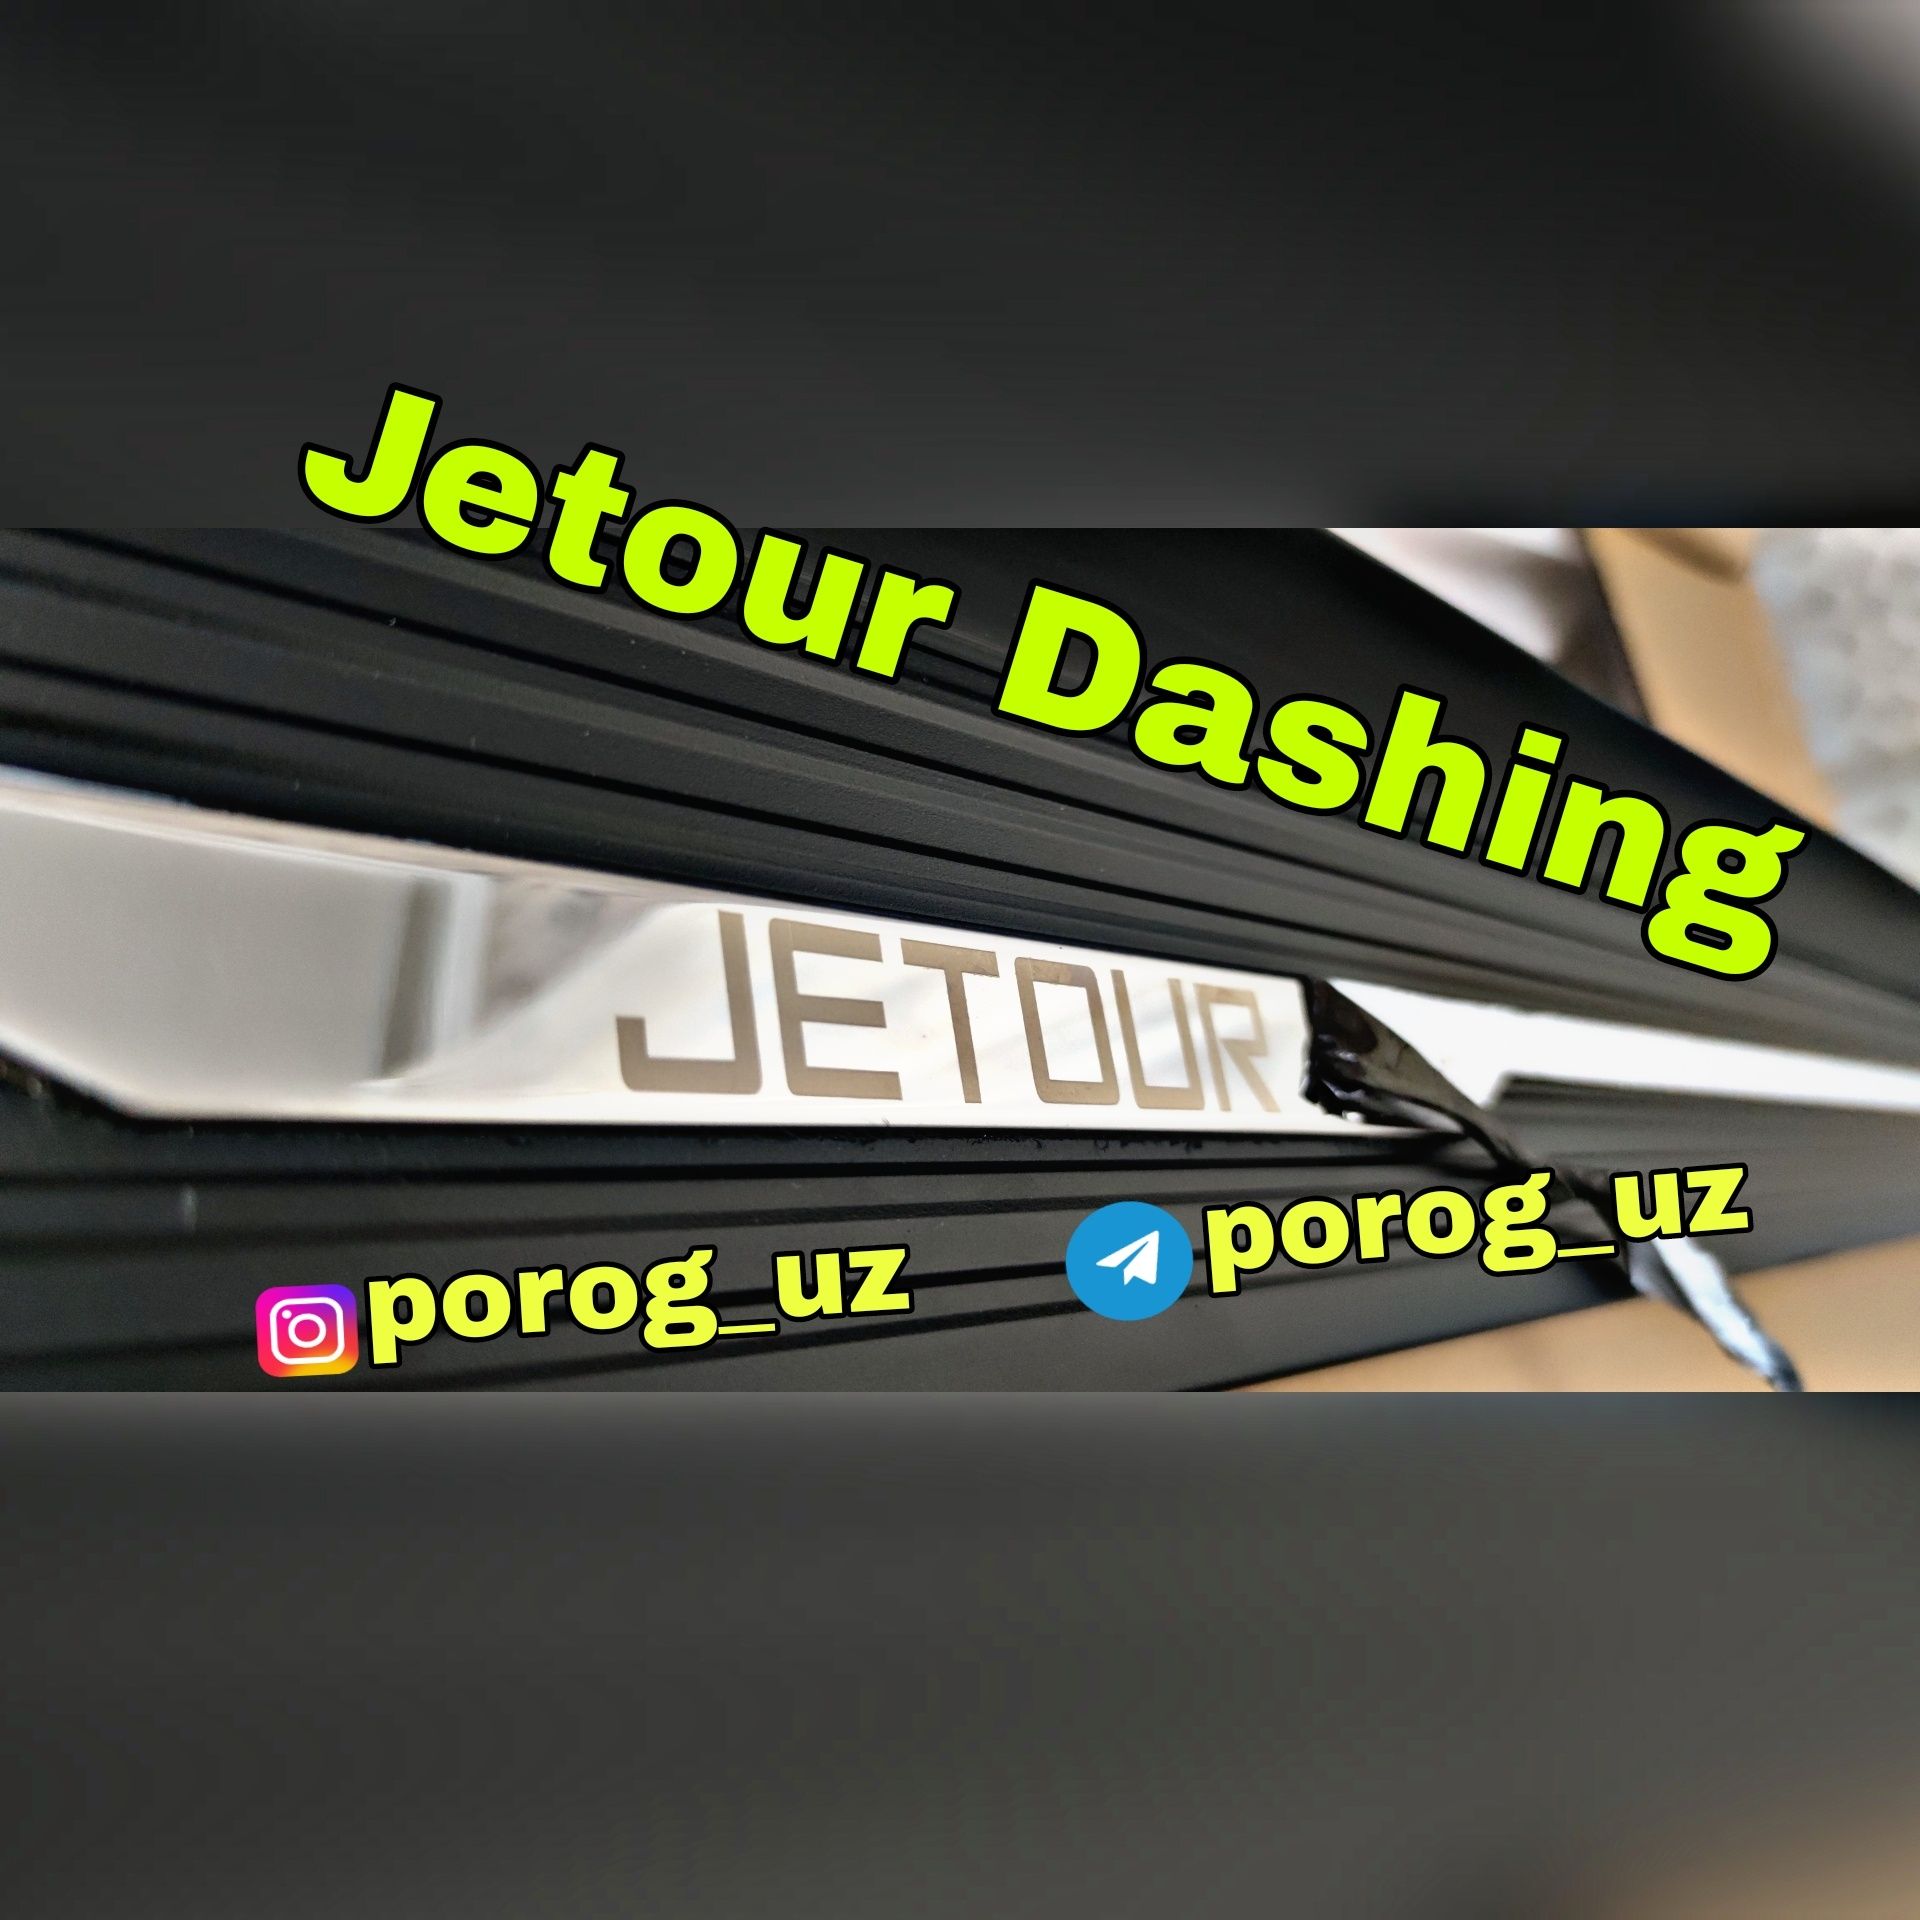 Пороги и подножки Оригинал для Jetour Dashing и для других кроссоверов